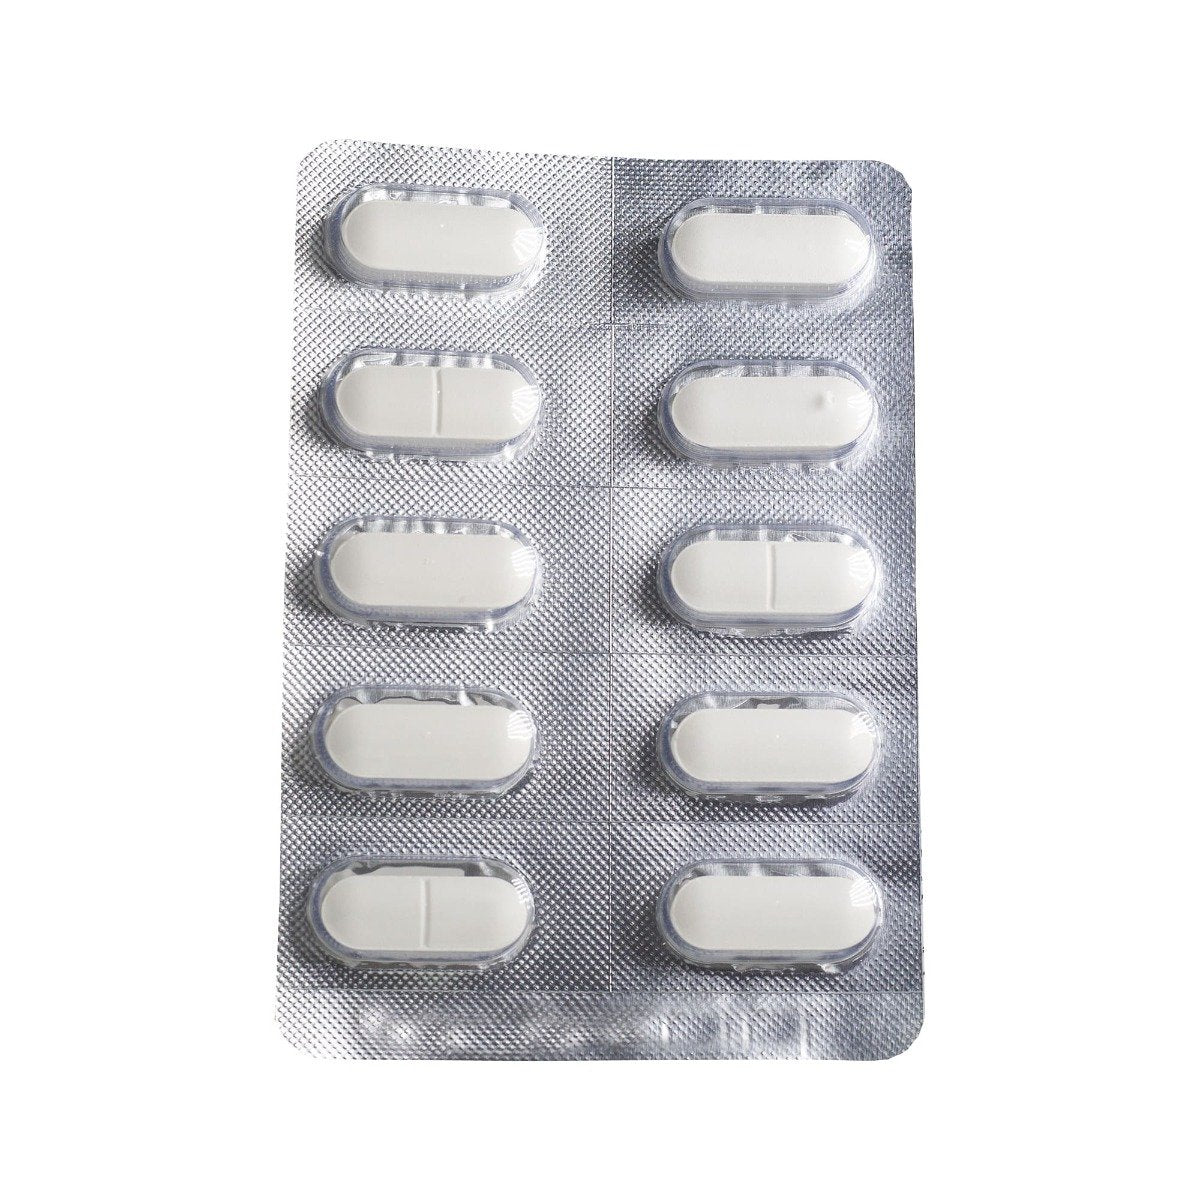 Cal Preg D - 30 Tablets - Bloom Pharmacy